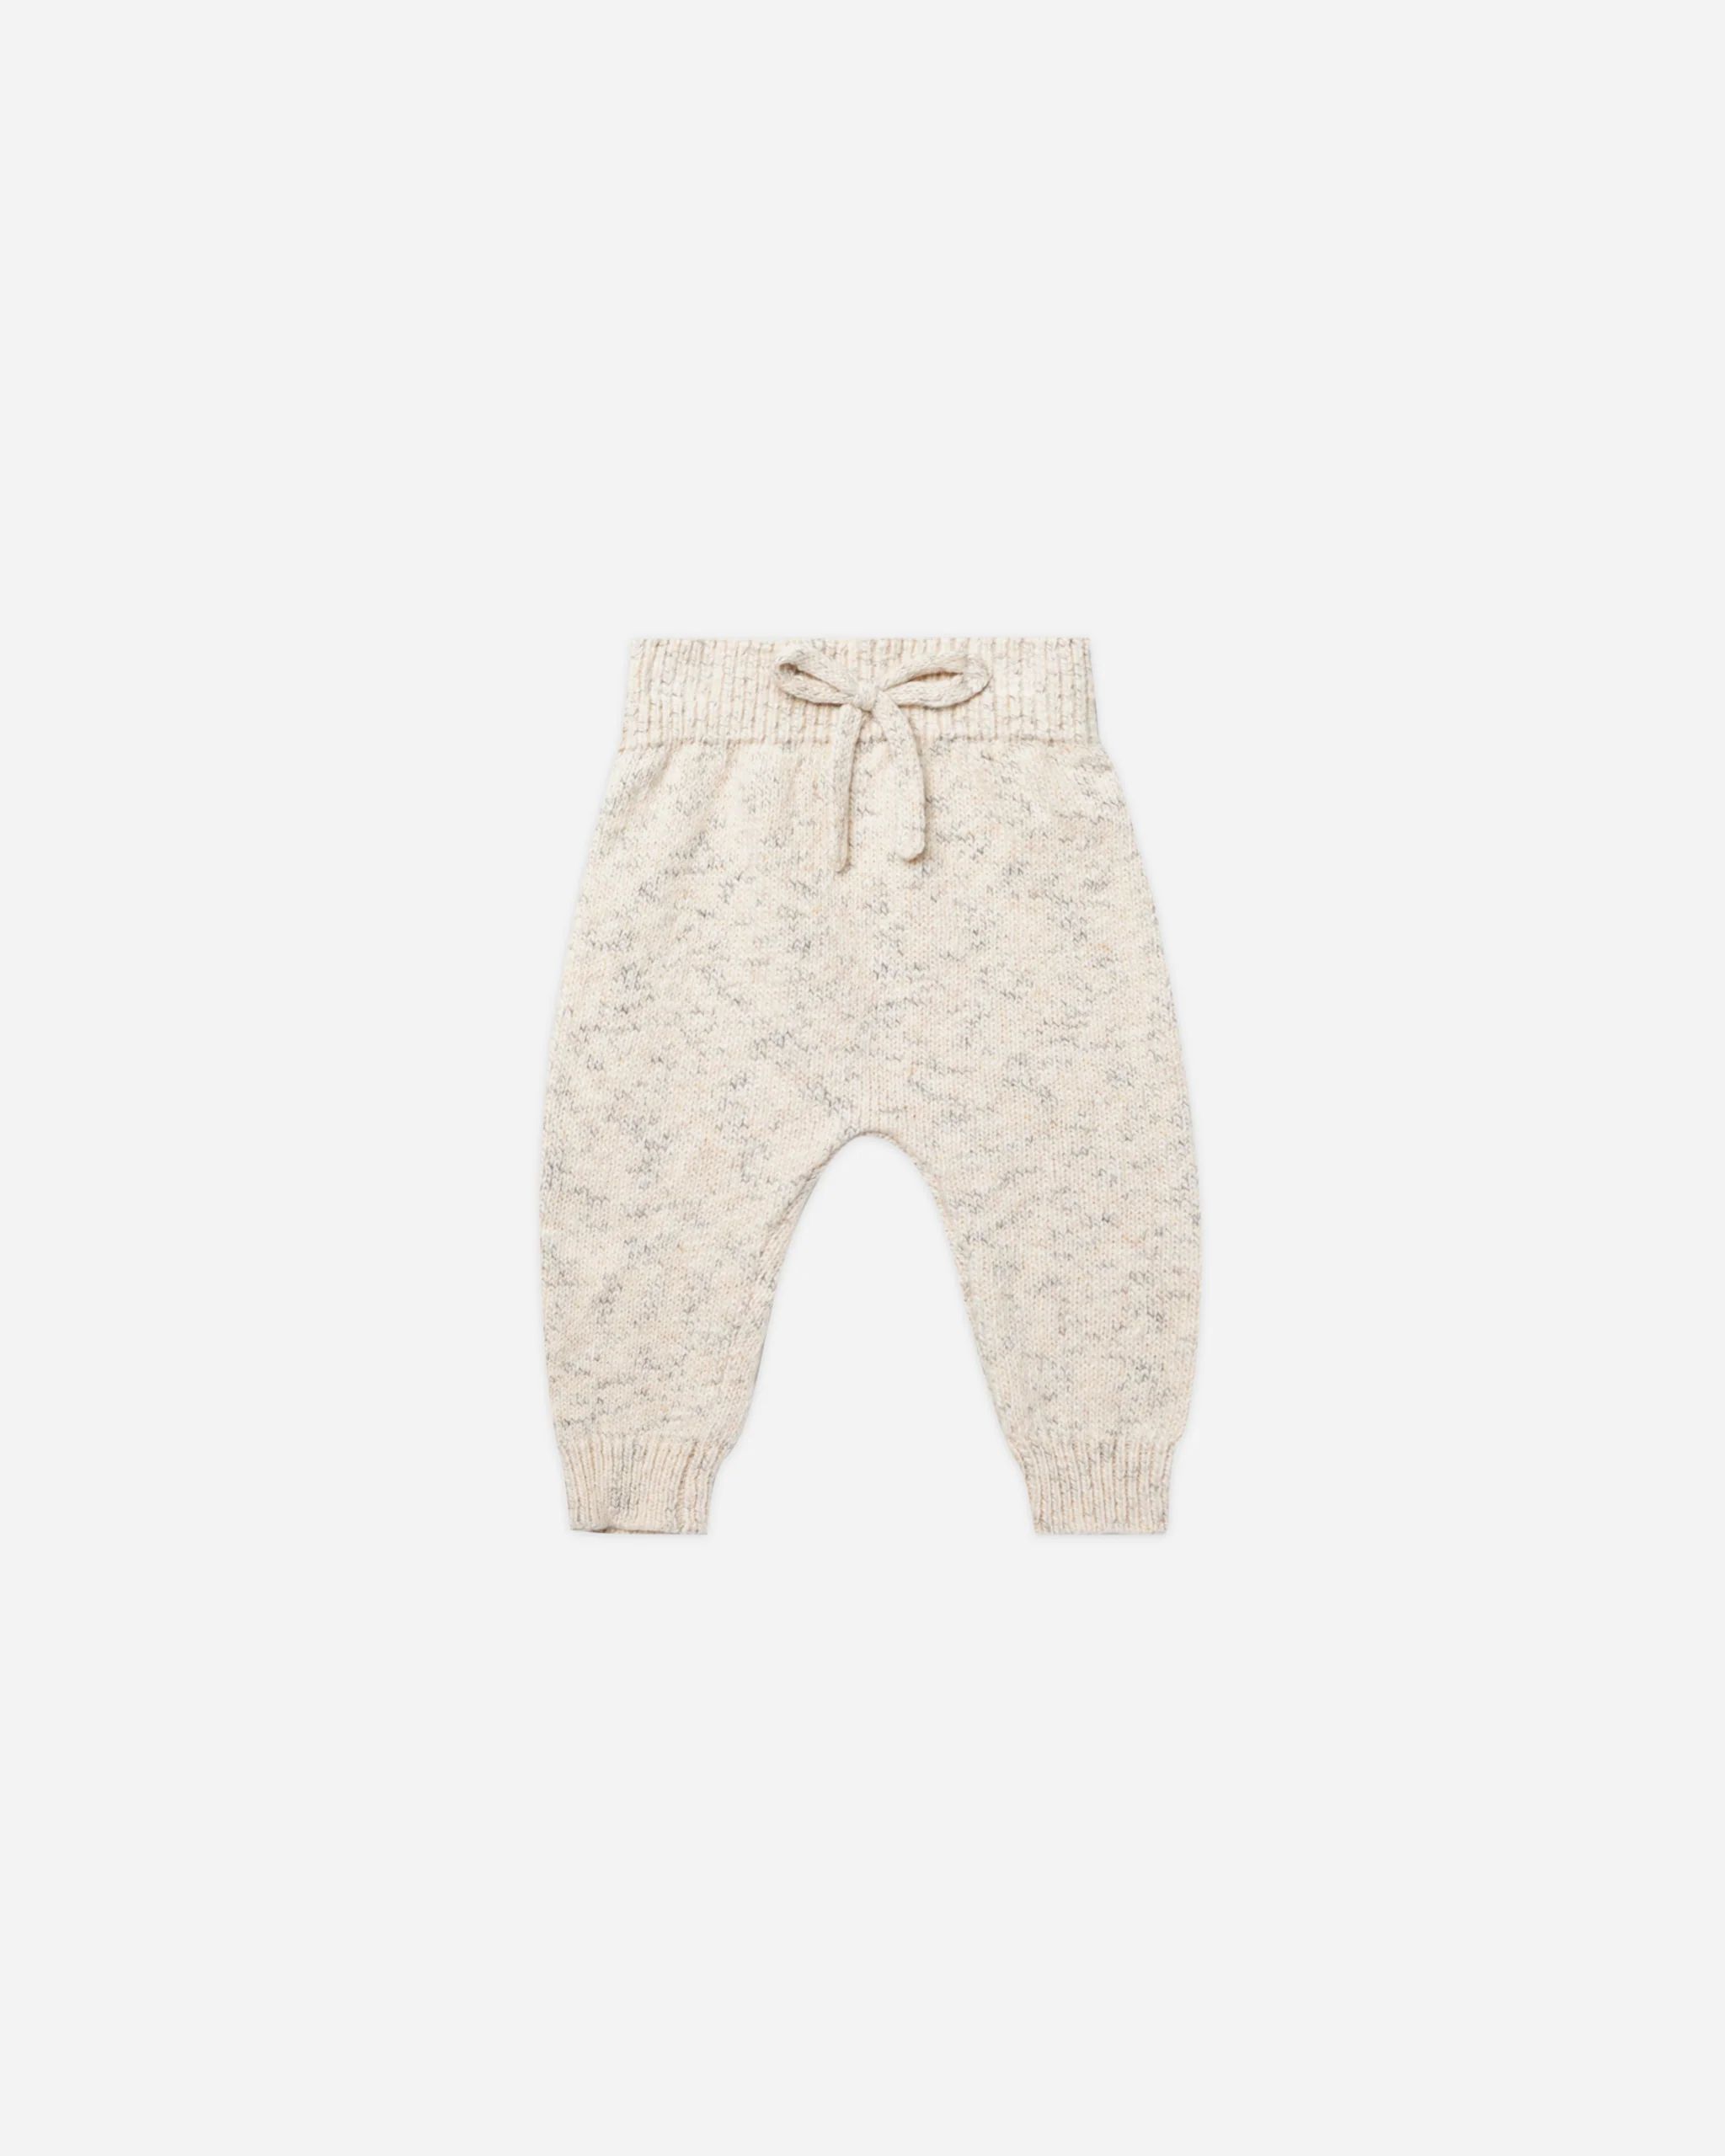 Speckled Knit Pant || Natural | Rylee + Cru